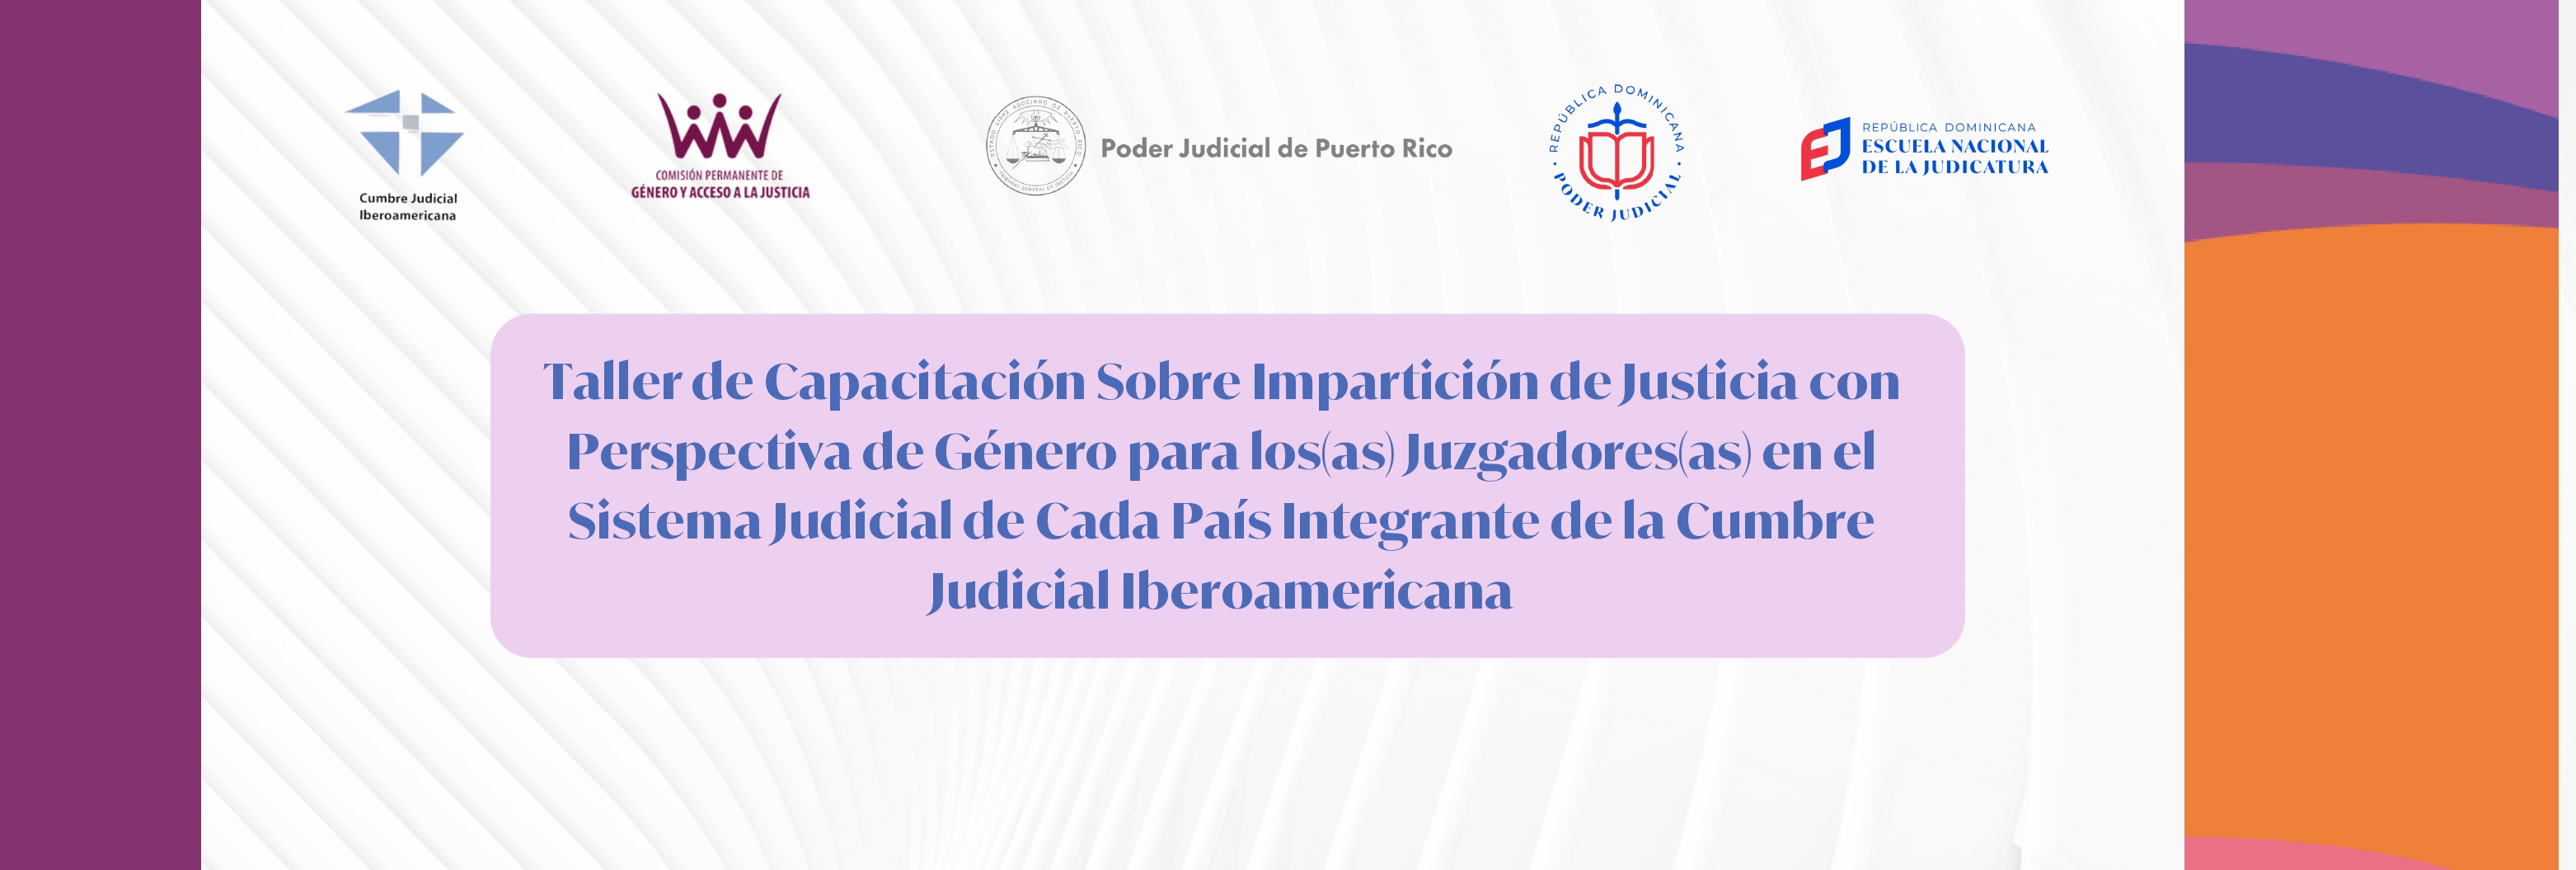 ANC-271-23-01 Taller de capacitación sobre impartición de justicia con perspectiva de género para los(as) juzgadores(as) en el sistema judicial de cada país integrante de la Cumbre Judicial Iberoamericana